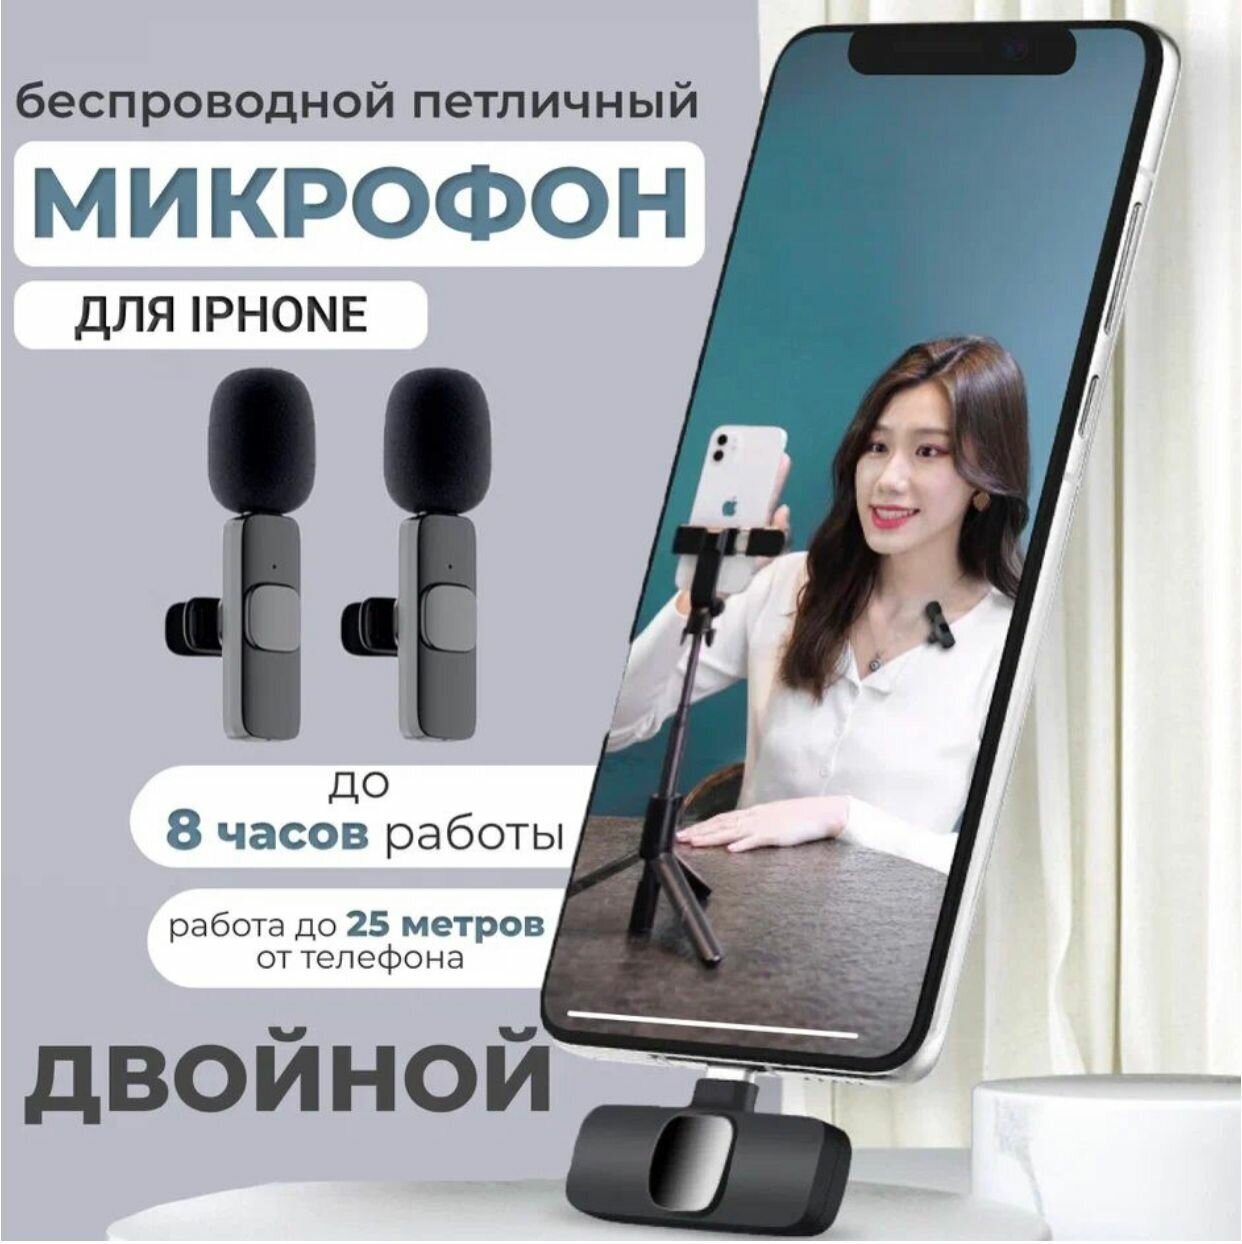 Комплект Premium из 2 беспроводных петличных микрофонов K9L duo для iPhone и iPad с шумоподавлением черные / штекер Lightning для устройств Apple